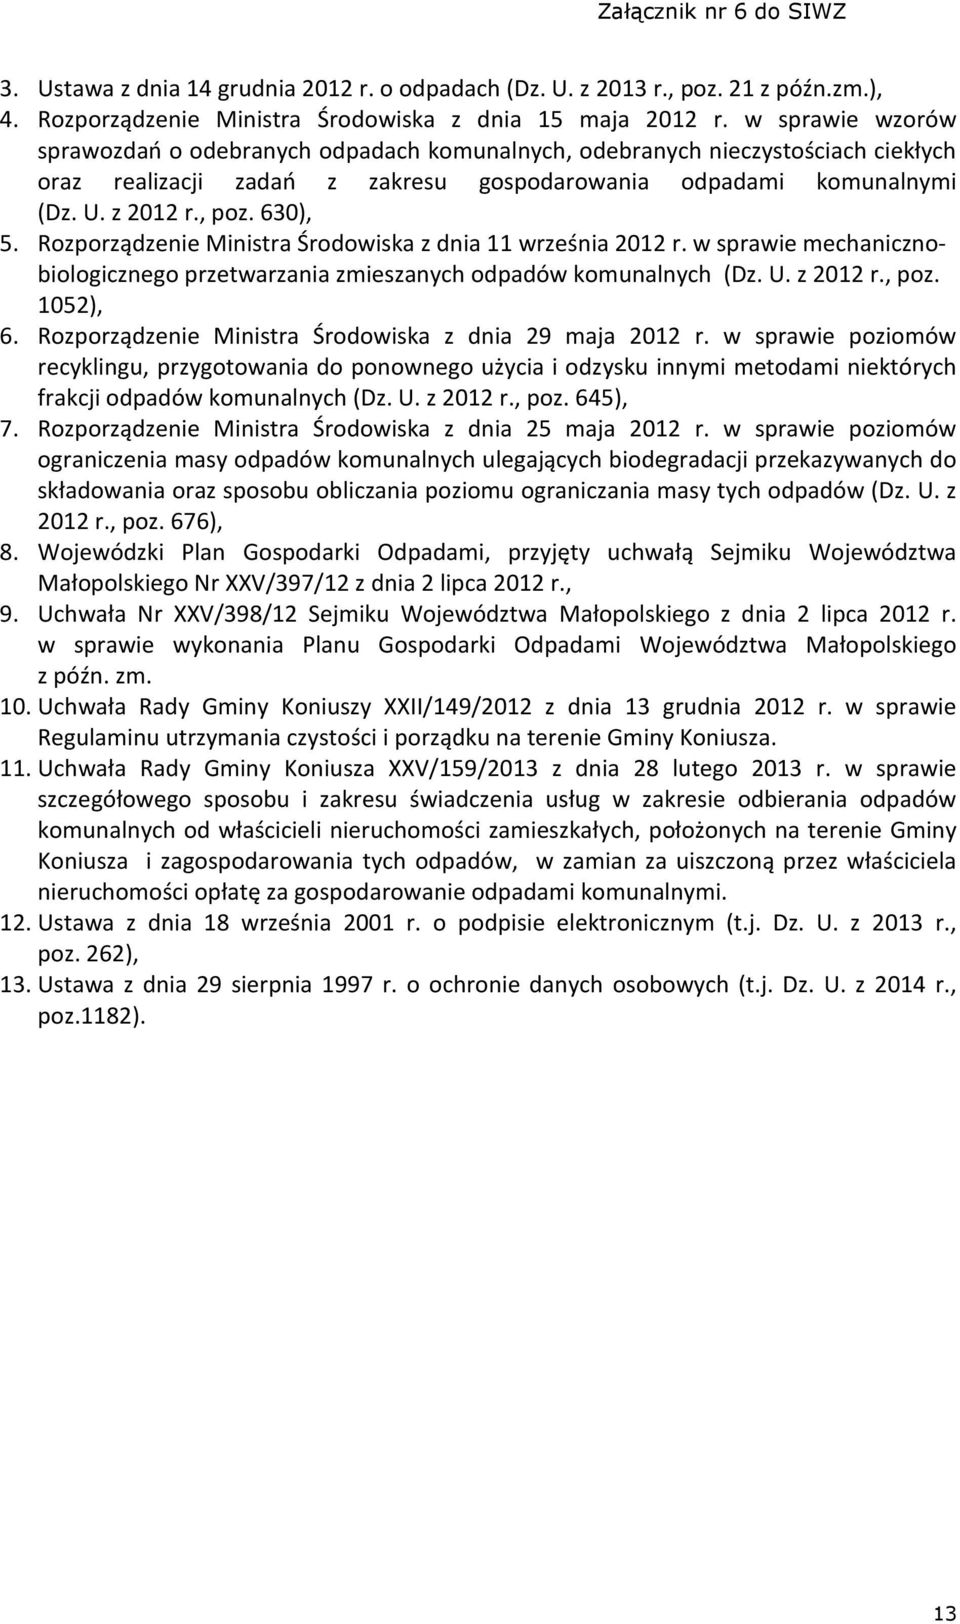 Rozporządzenie Ministra Środowiska z dnia 11 września 2012 r. w sprawie mechanicznobiologicznego przetwarzania zmieszanych odpadów komunalnych (Dz. U. z 2012 r., poz. 1052), 6.